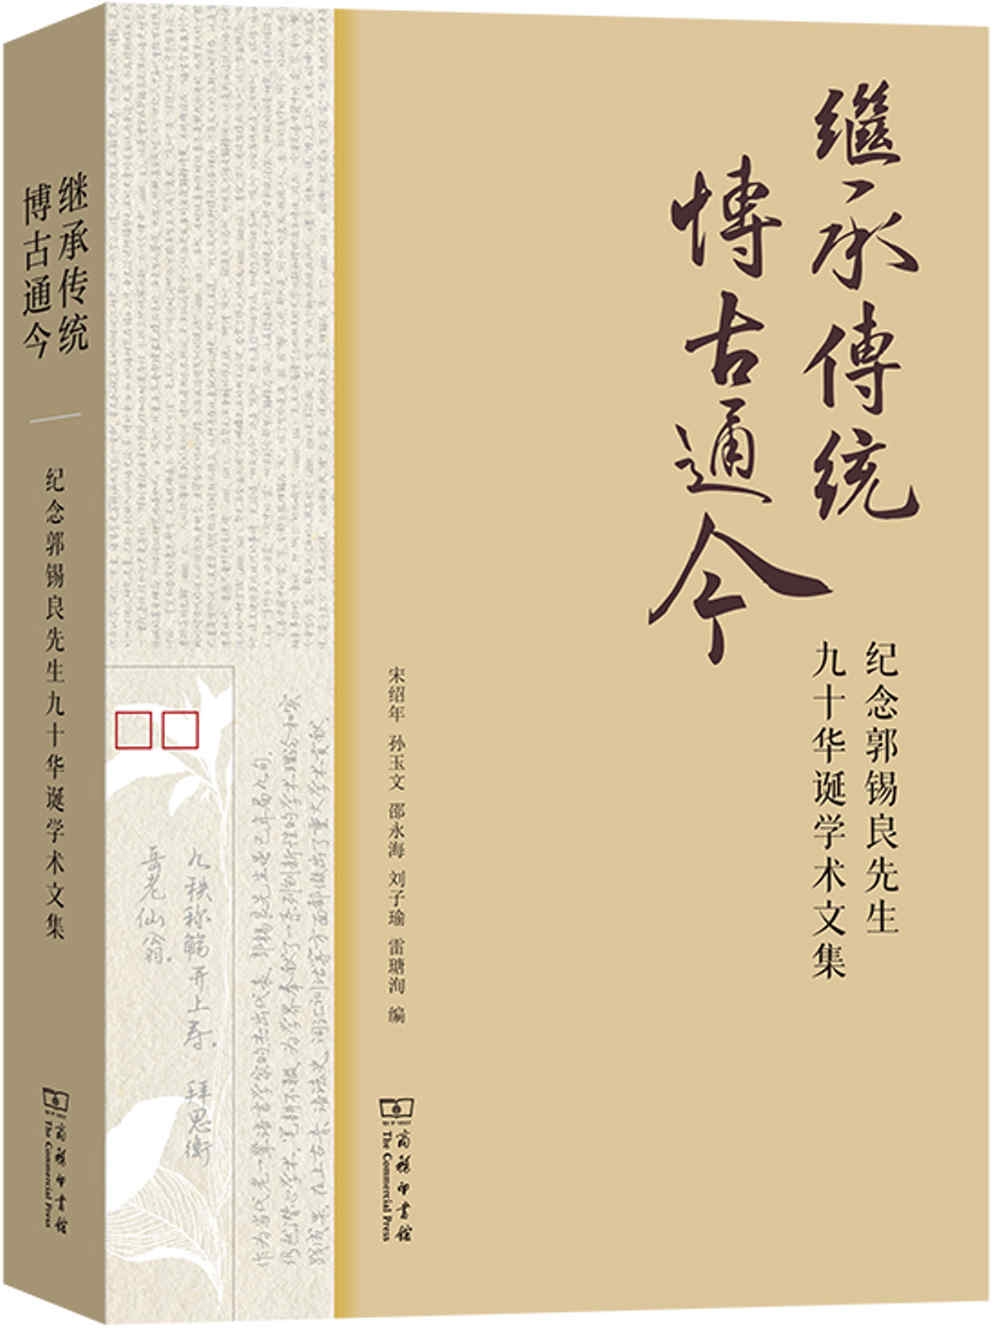 繼承傳統 博古通今：慶祝郭錫良先生九十華誕學術文集